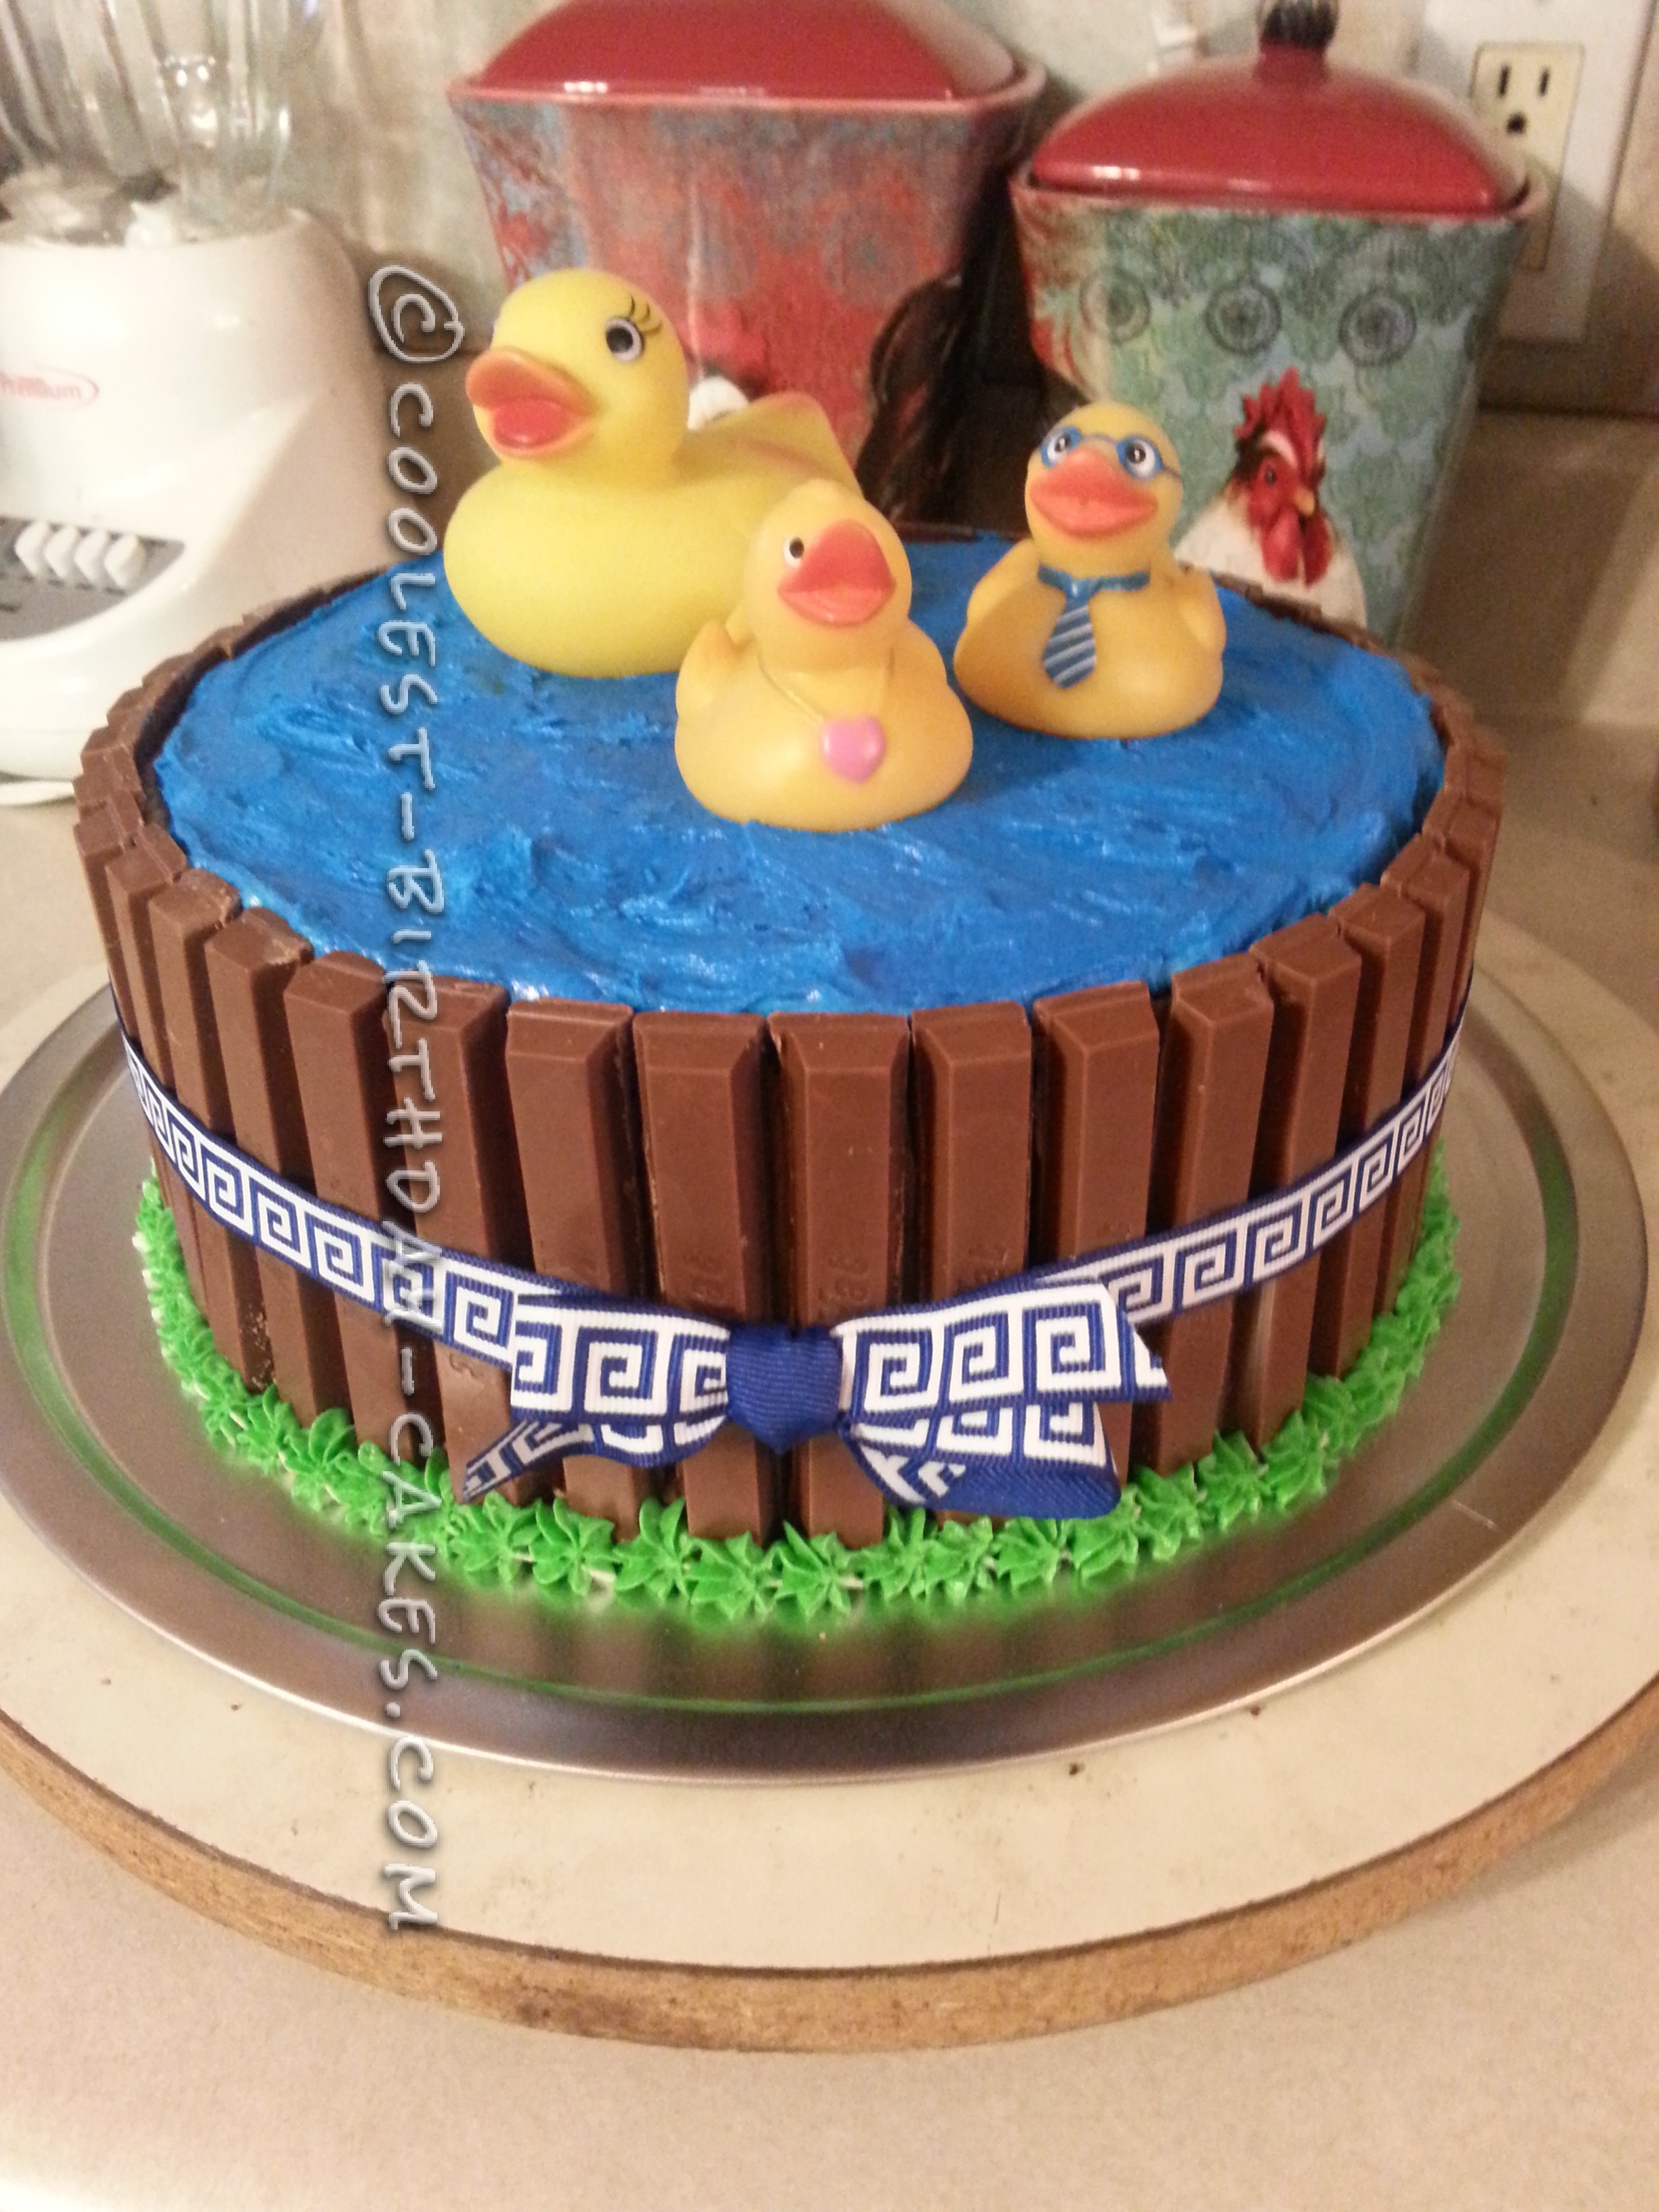 Super Cute Rubber Duckies in a Pool Cake